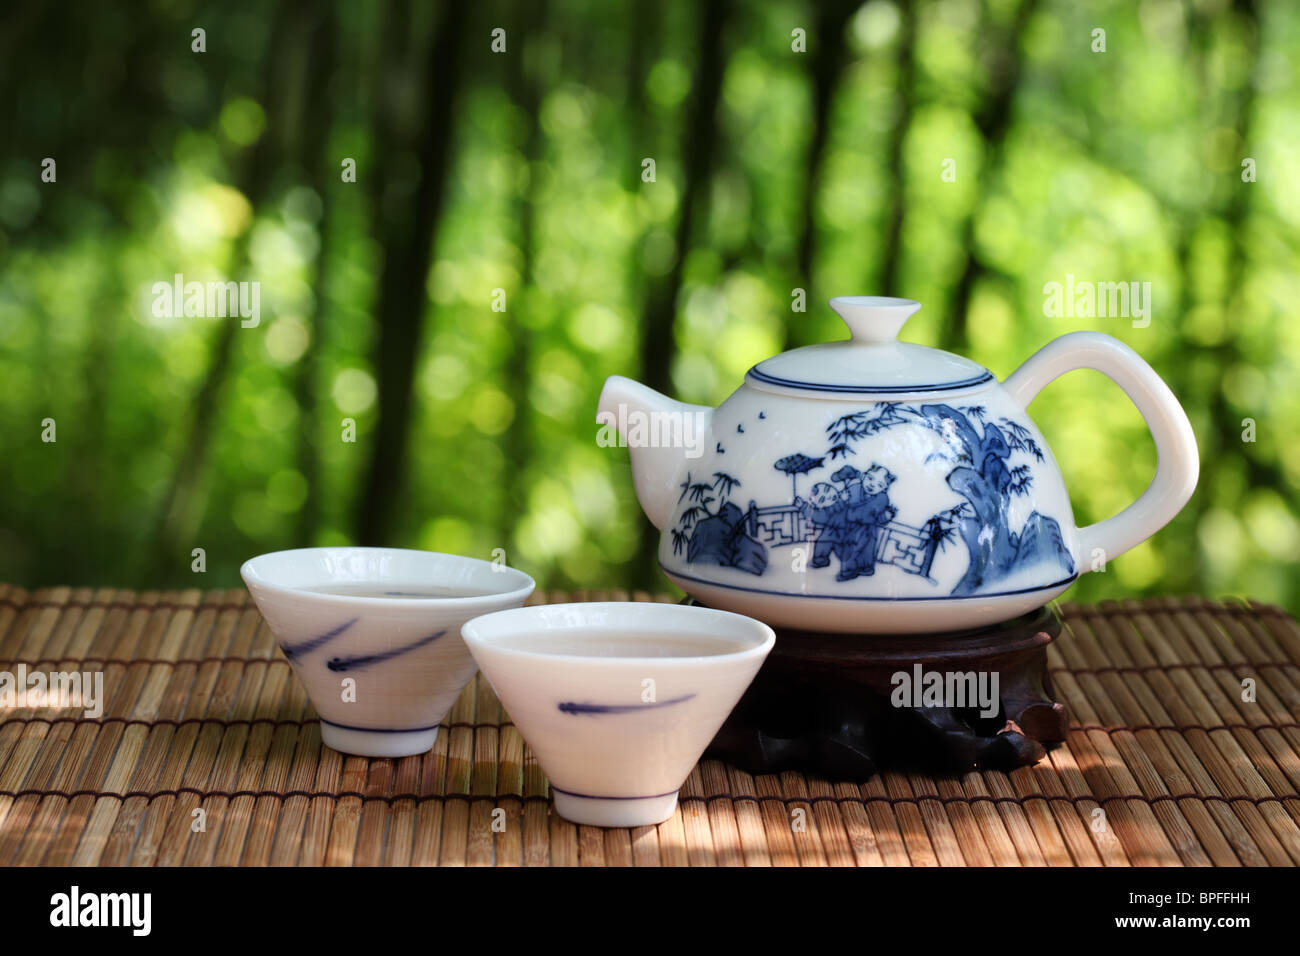 Asian tea set in nature,Closeup. Stock Photo